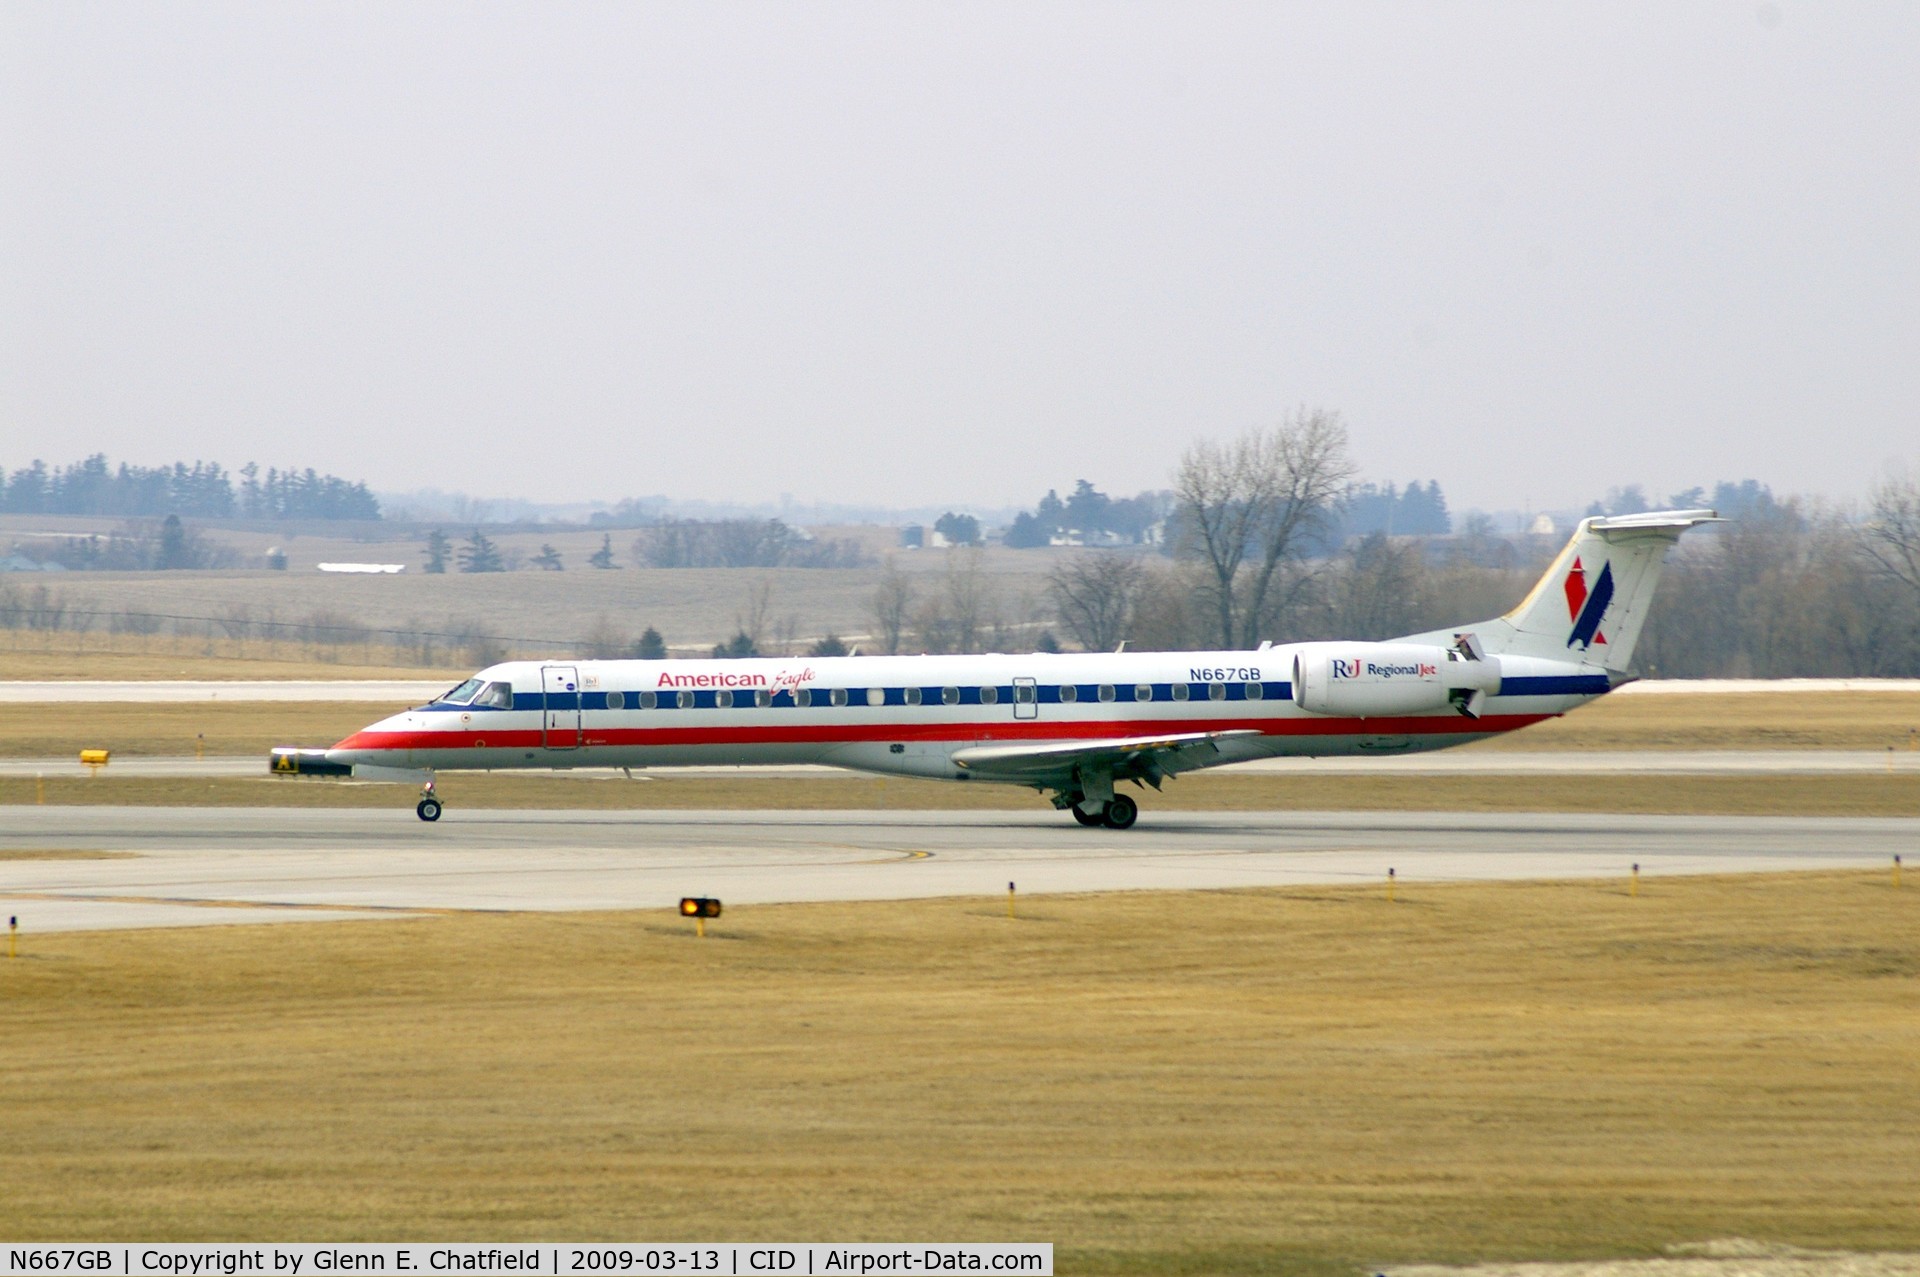 N667GB, 2004 Embraer ERJ-145LR (EMB-145LR) C/N 145784, Landing roll, runway 13